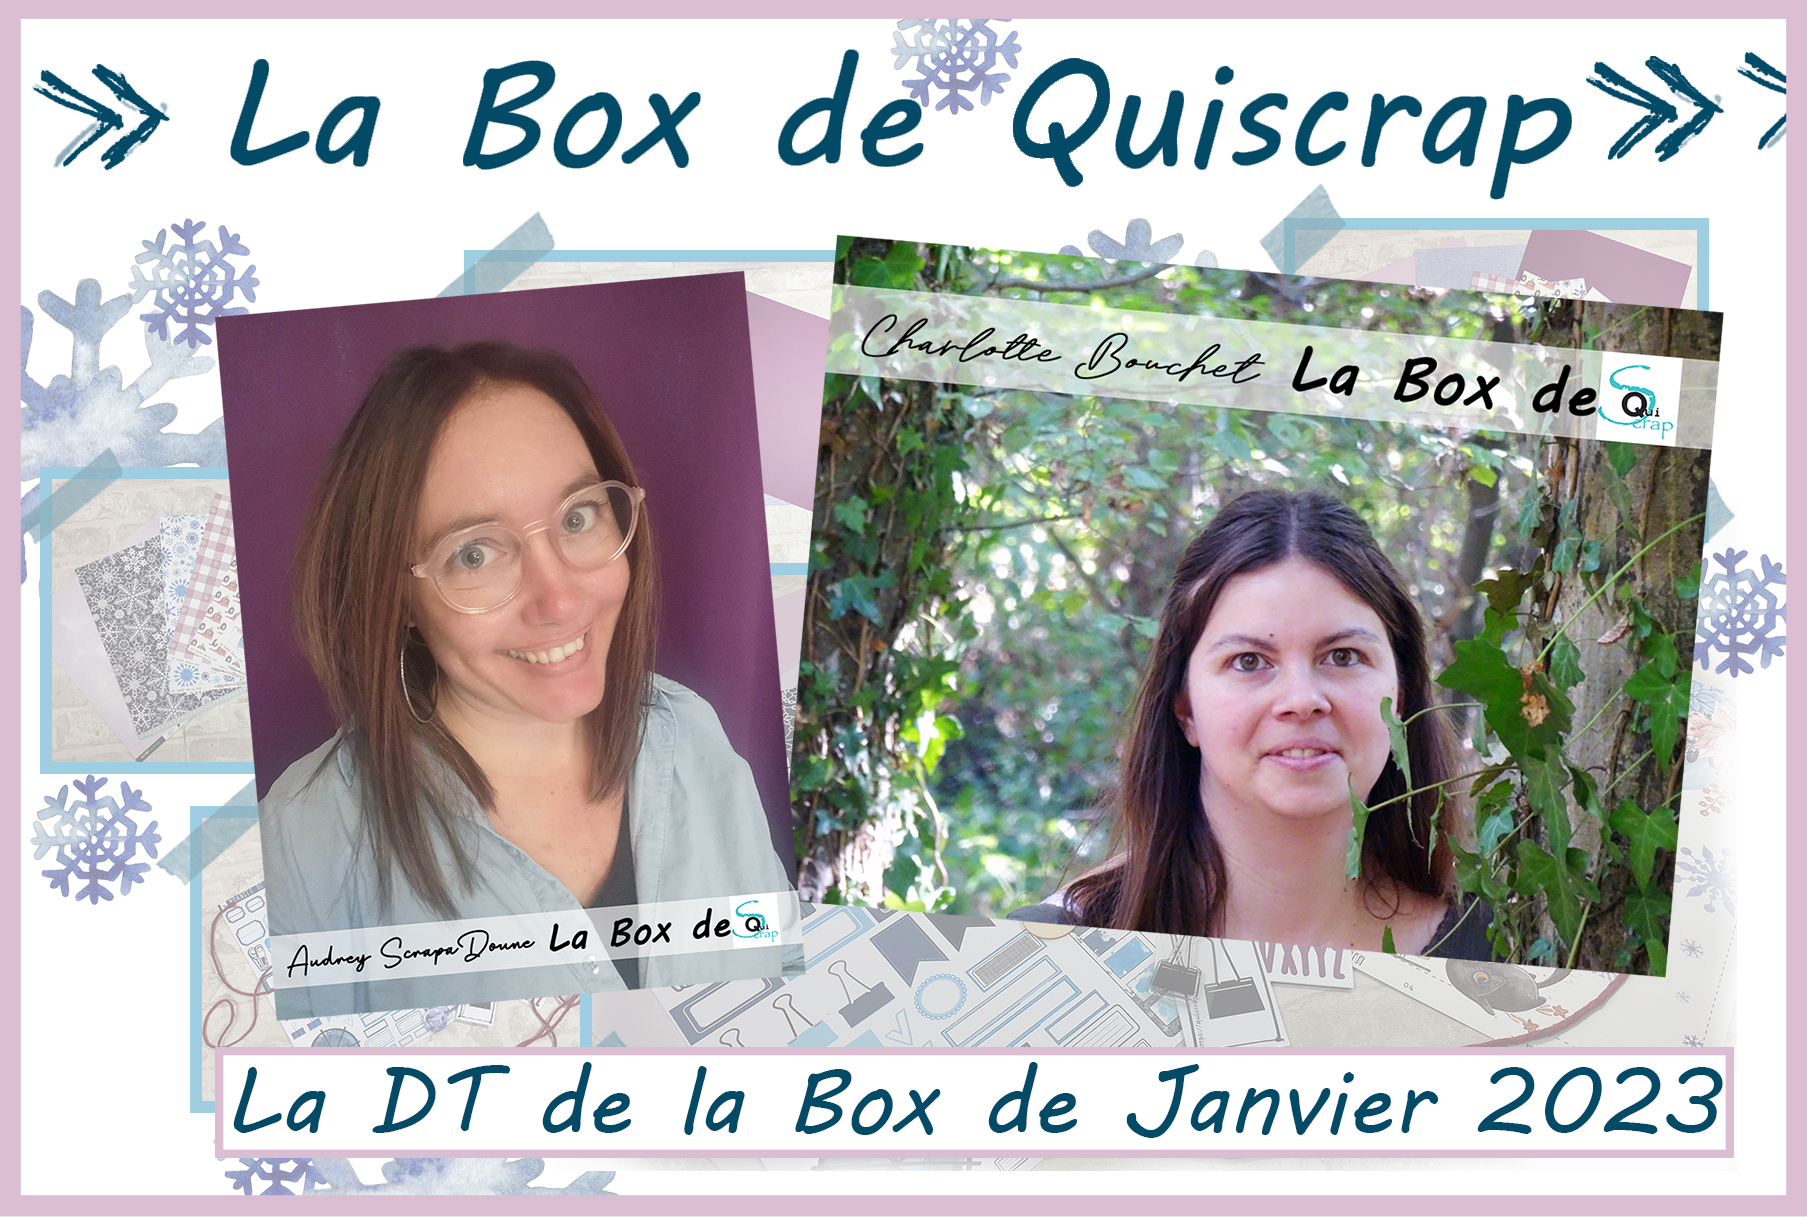 You are currently viewing Les Invitées Créatives pour la Box de Janvier 2023 sont Charlotte Bouchet et Audrey ScrapaDoune